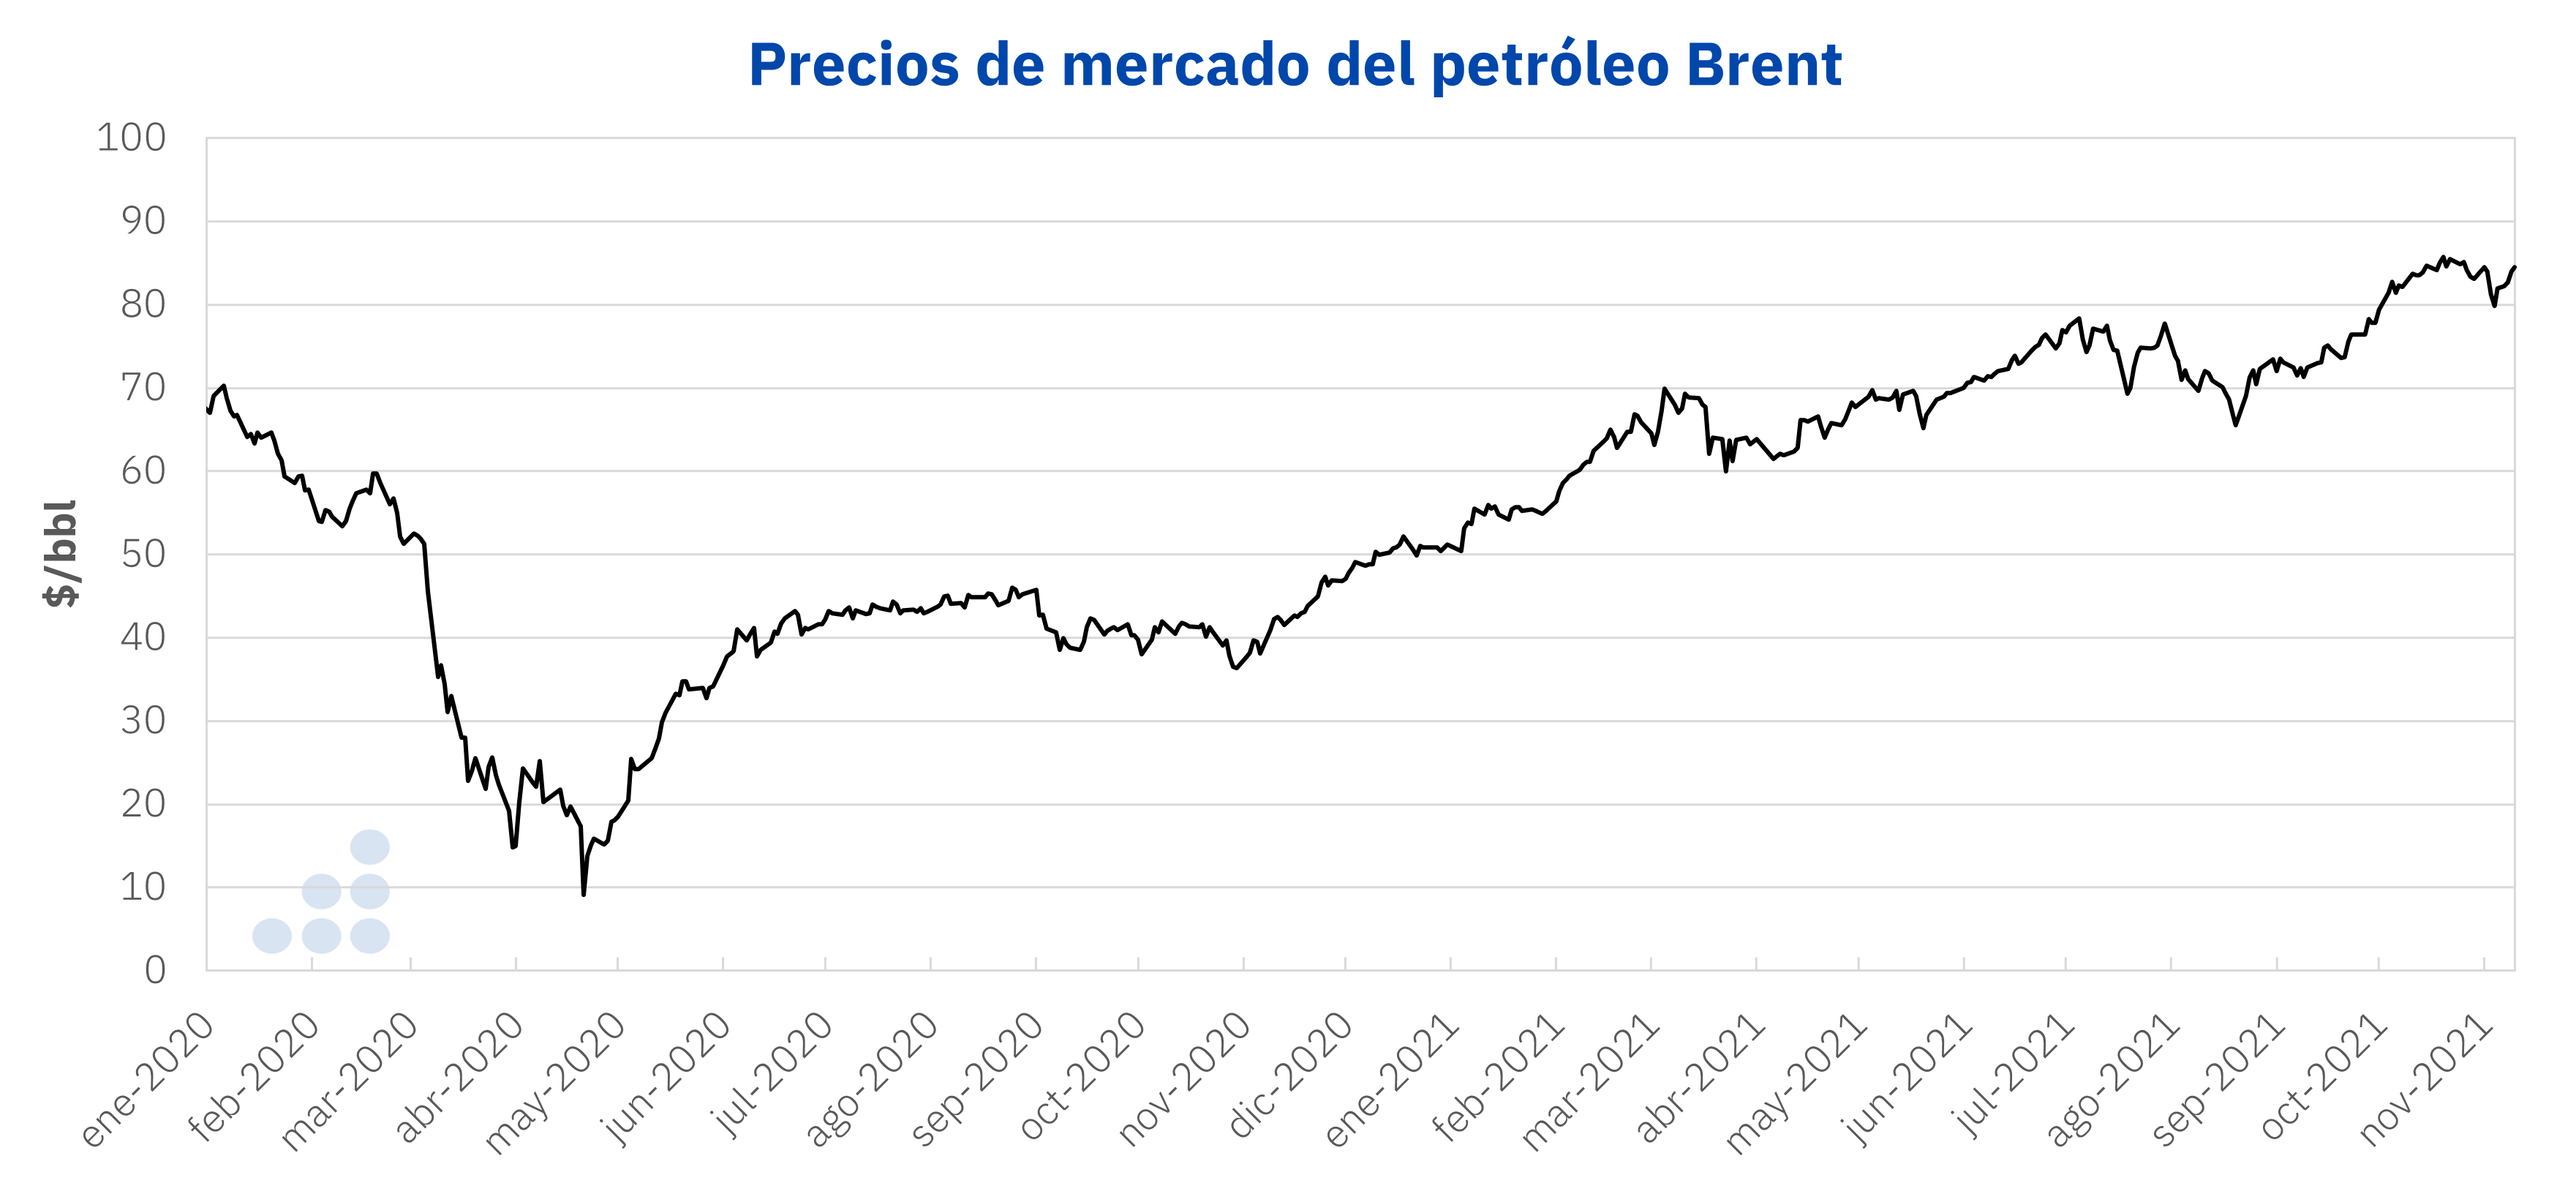 AleaSoft - Precios petroleo Brent